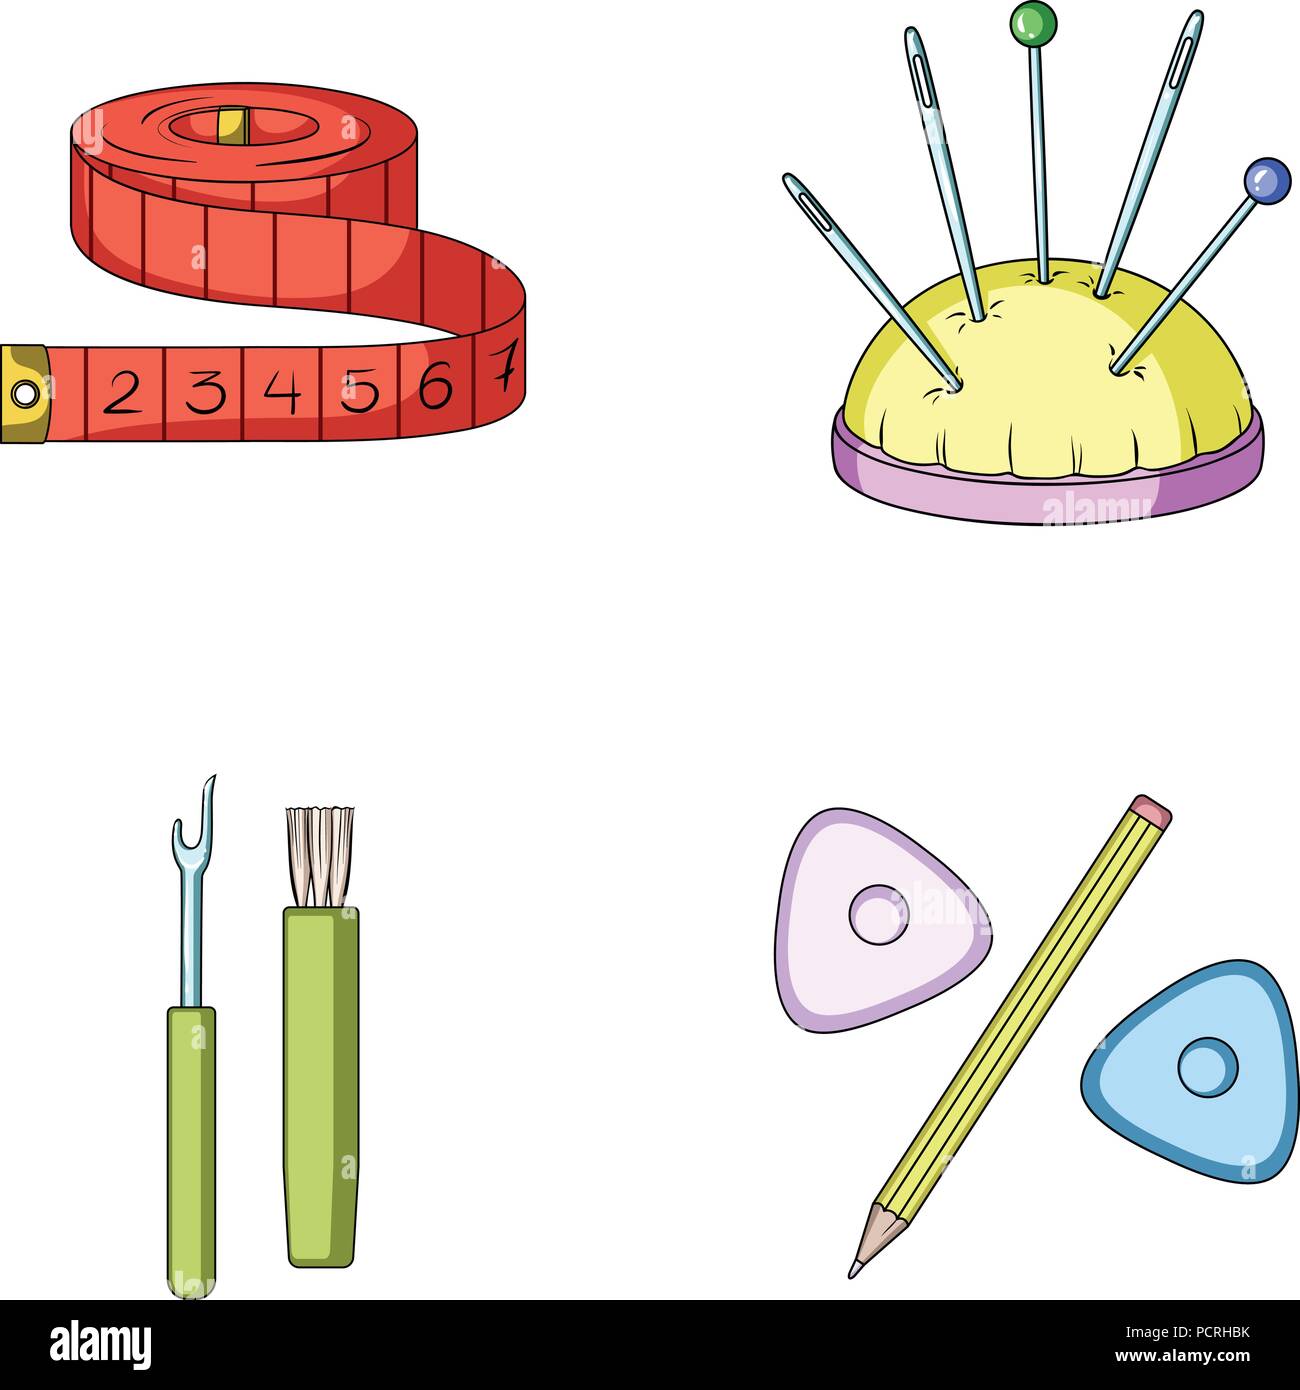 Maßband, Nadeln, Kreide und Bleistift. Nähen oder Schneiderei Werkzeuge  Sammlung Icons im Comic-stil Vektor Symbol lieferbar Abbildung  Stock-Vektorgrafik - Alamy